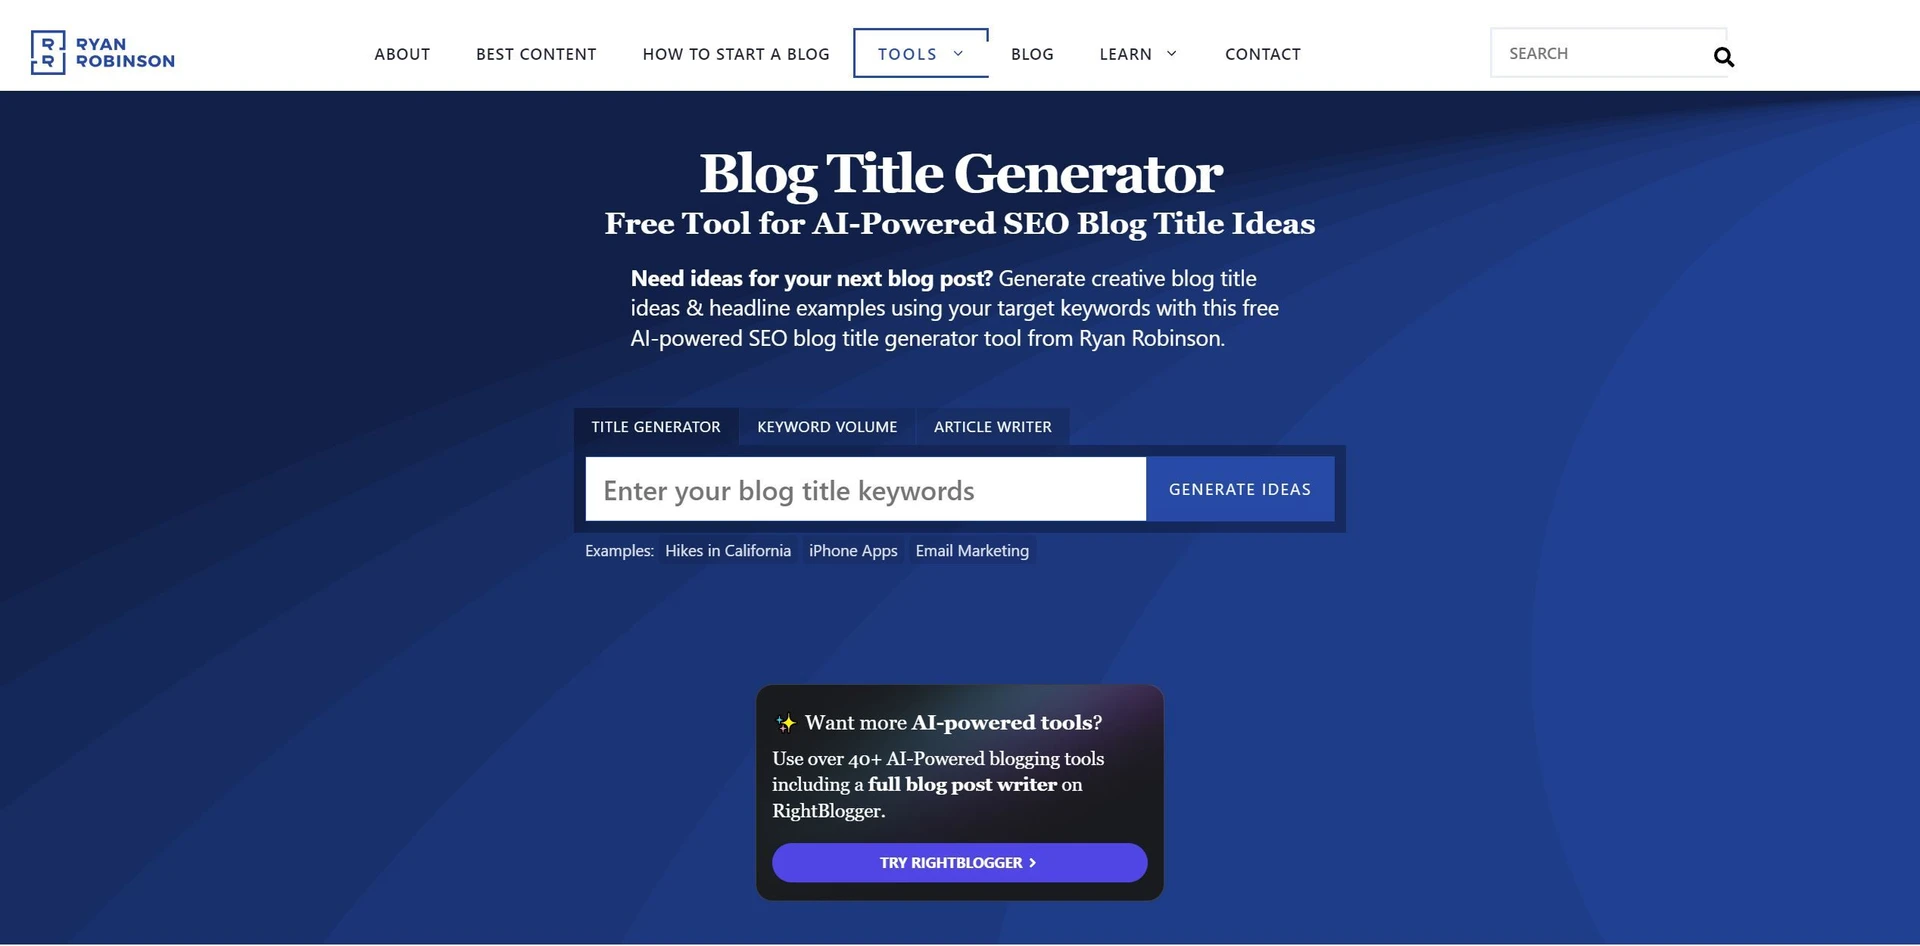 Blog Title Generatorwebsite picture